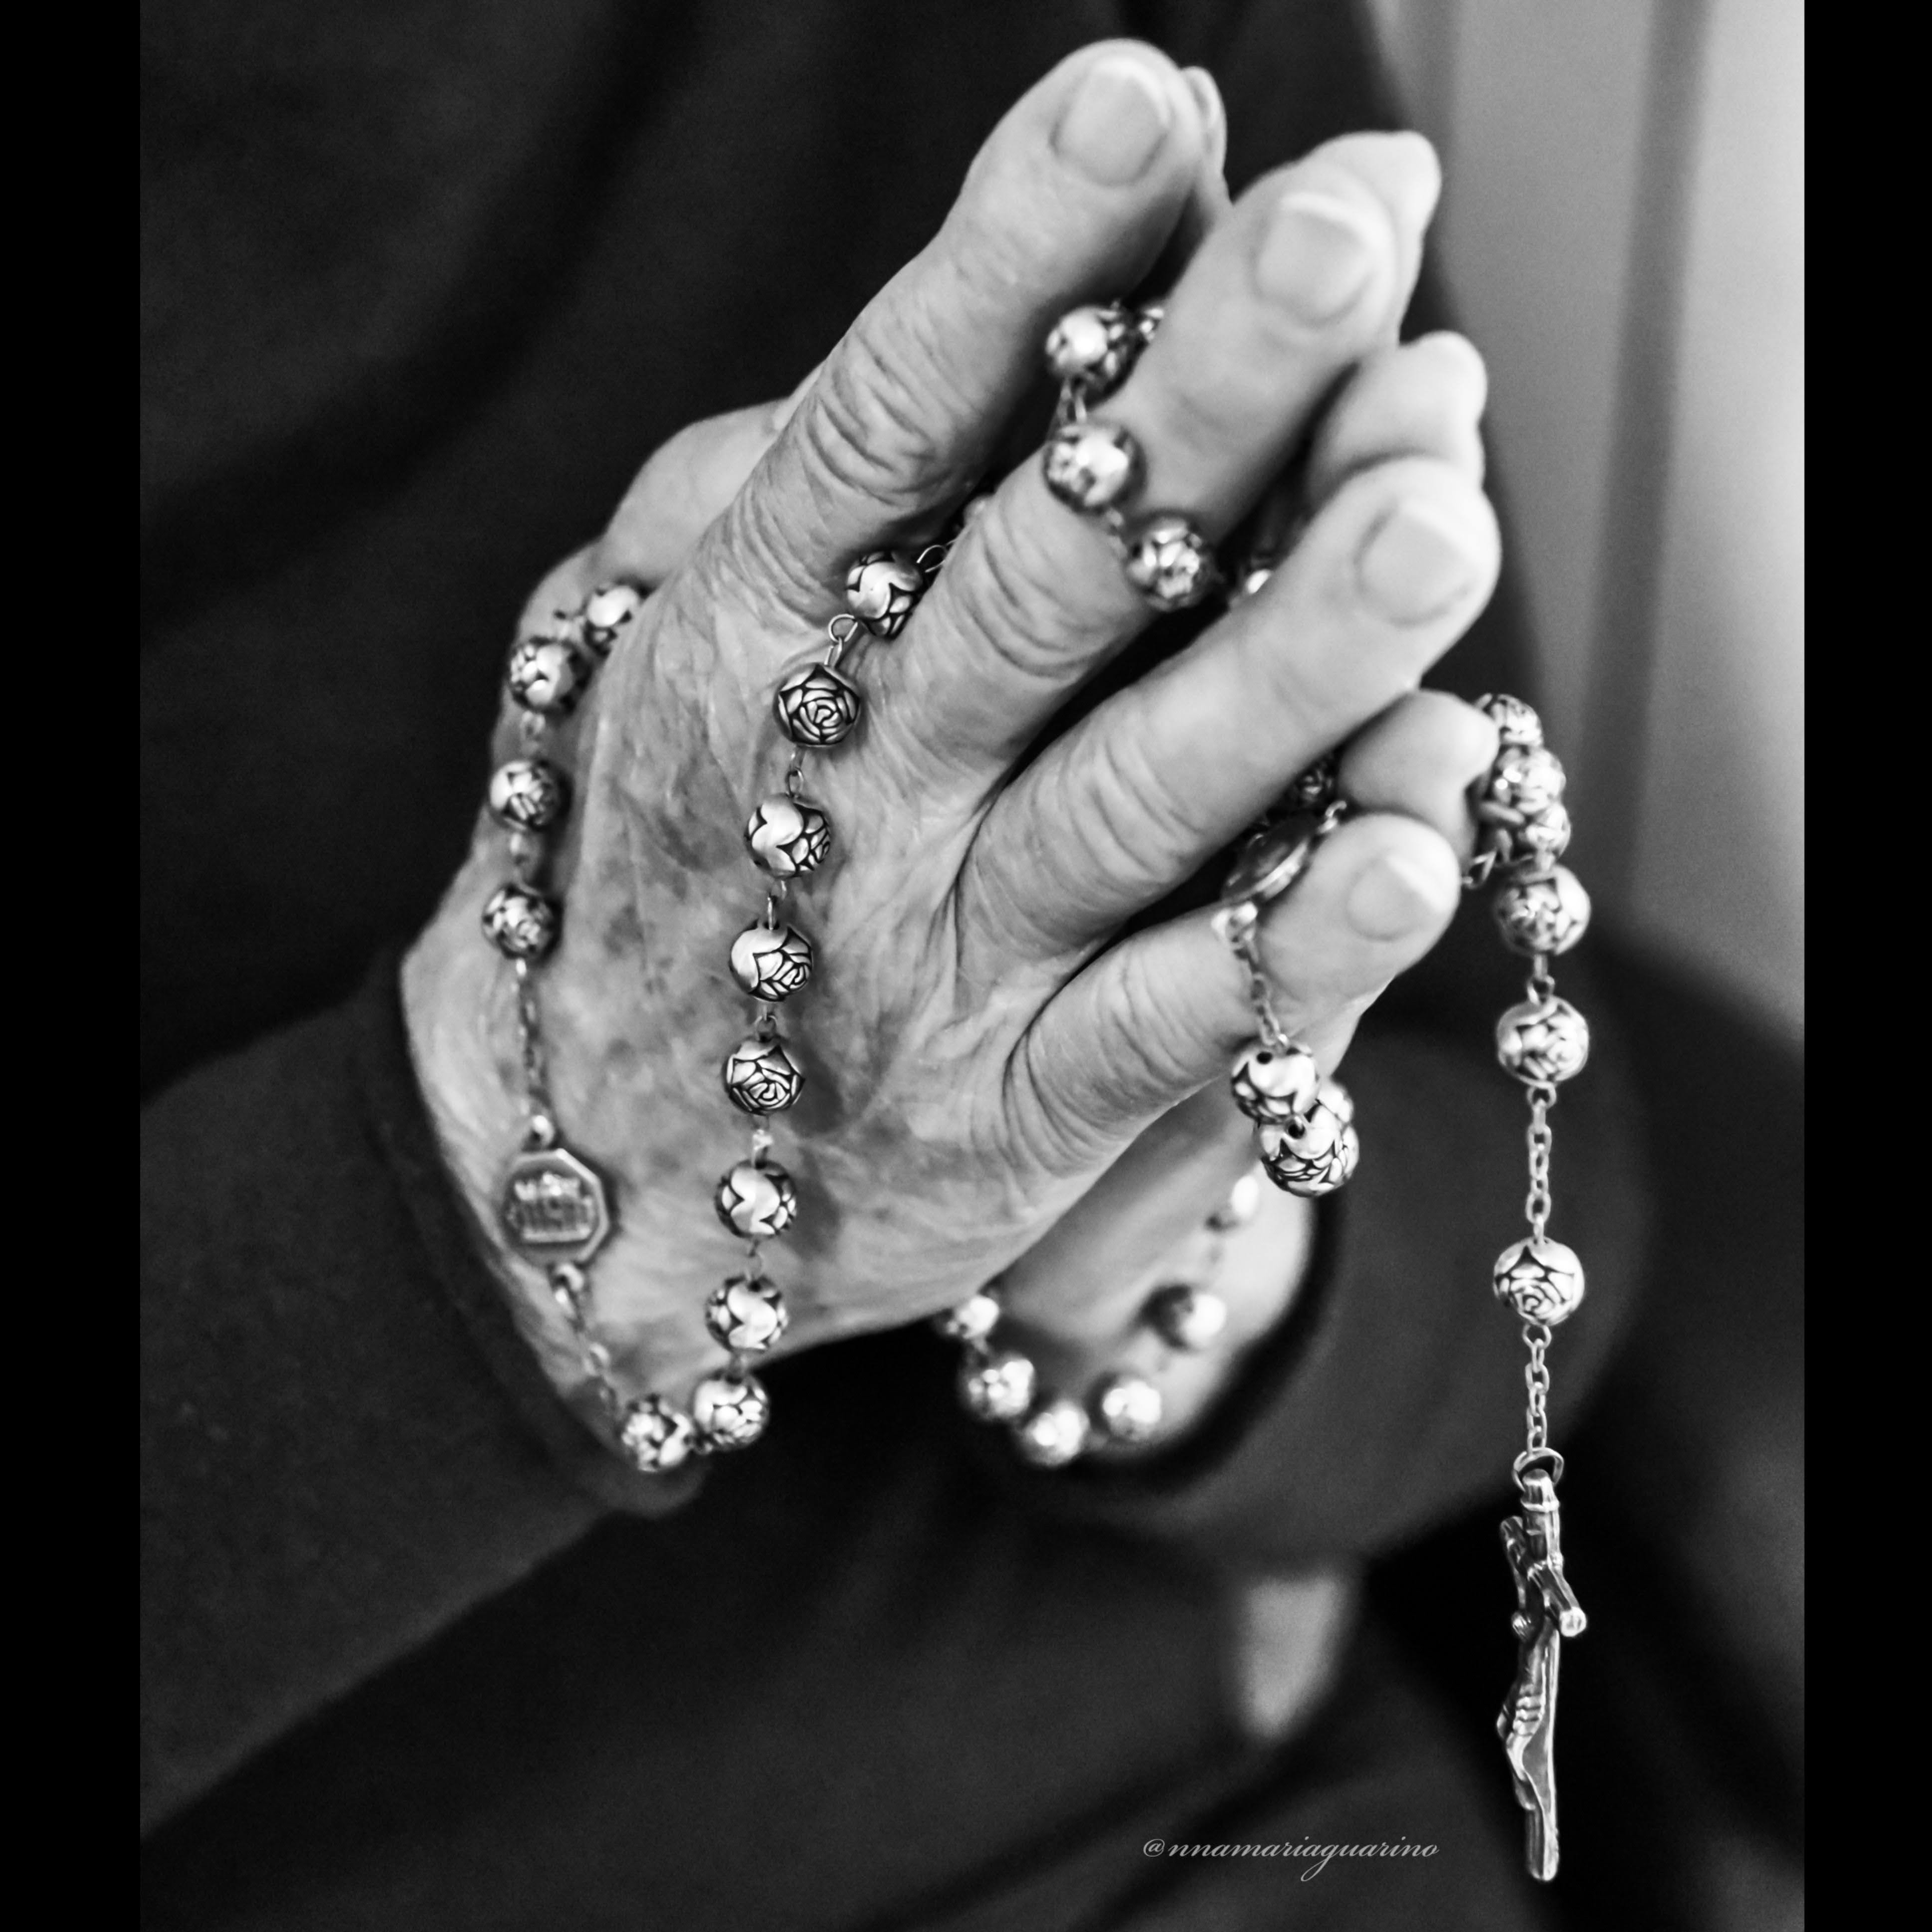 Il santo rosario.